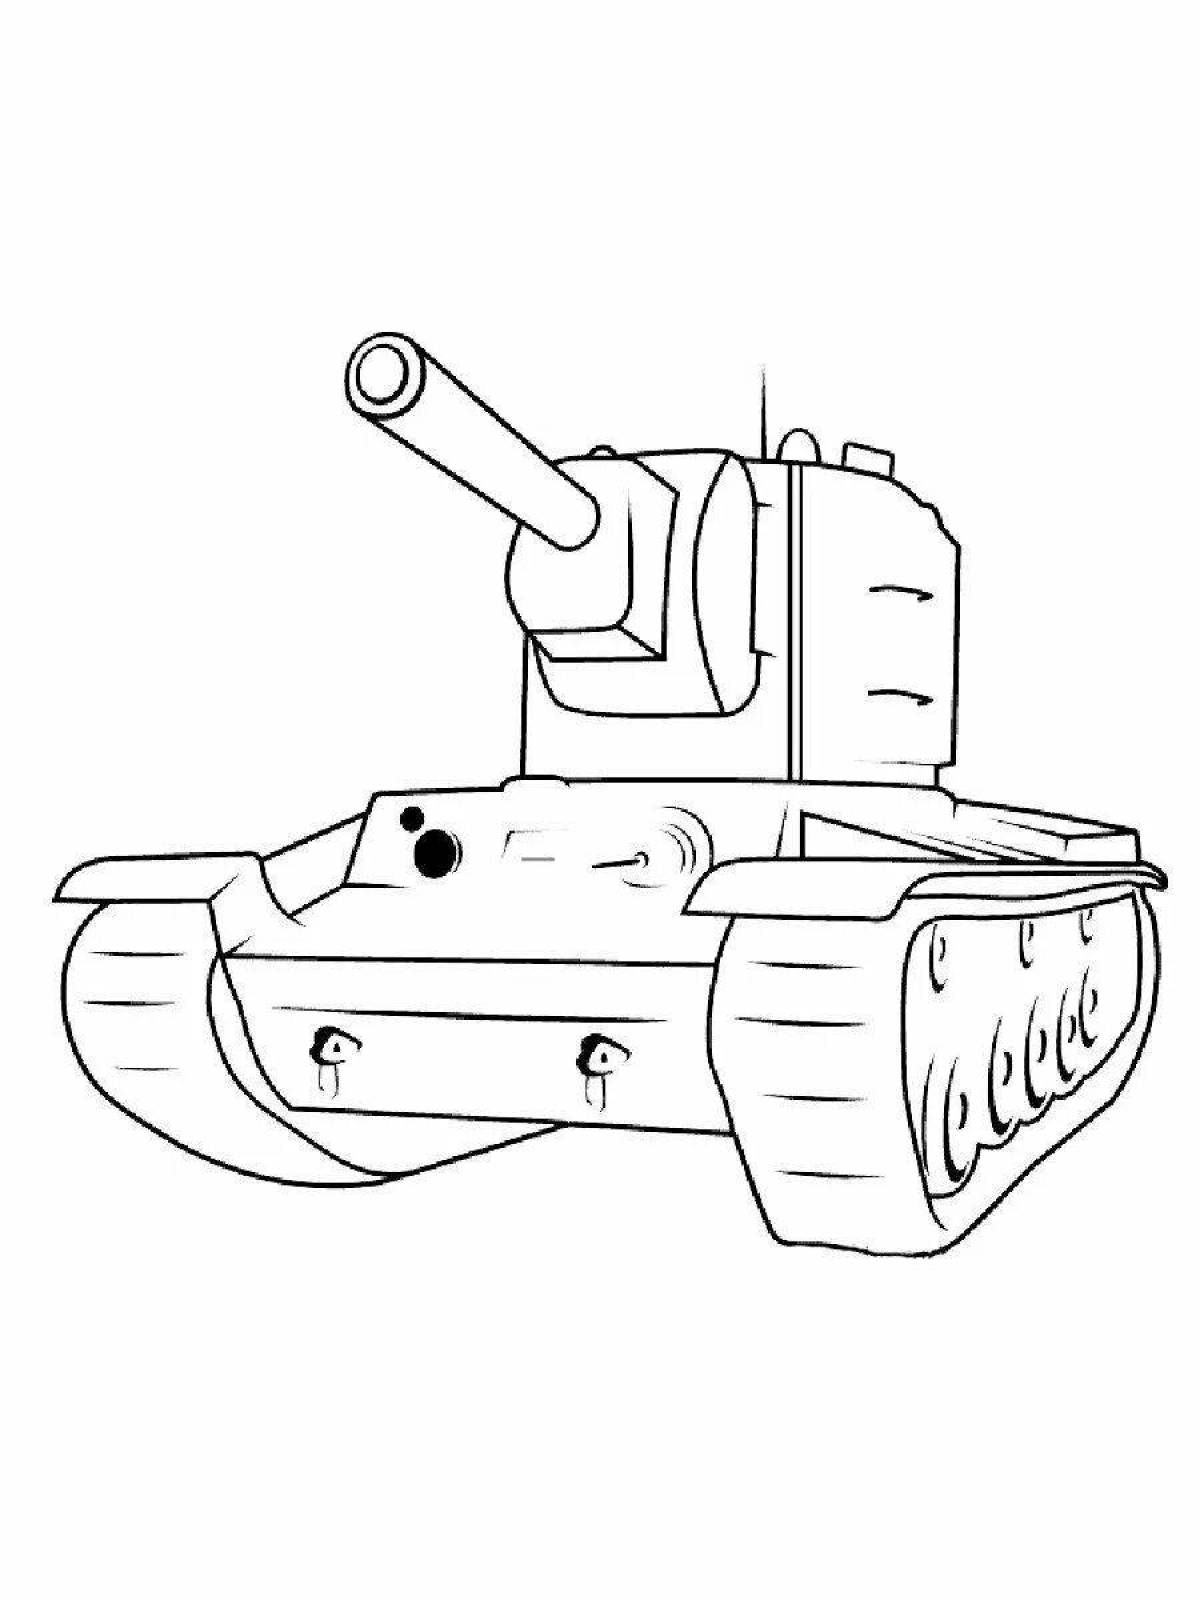 Complex tank kv 5 coloring